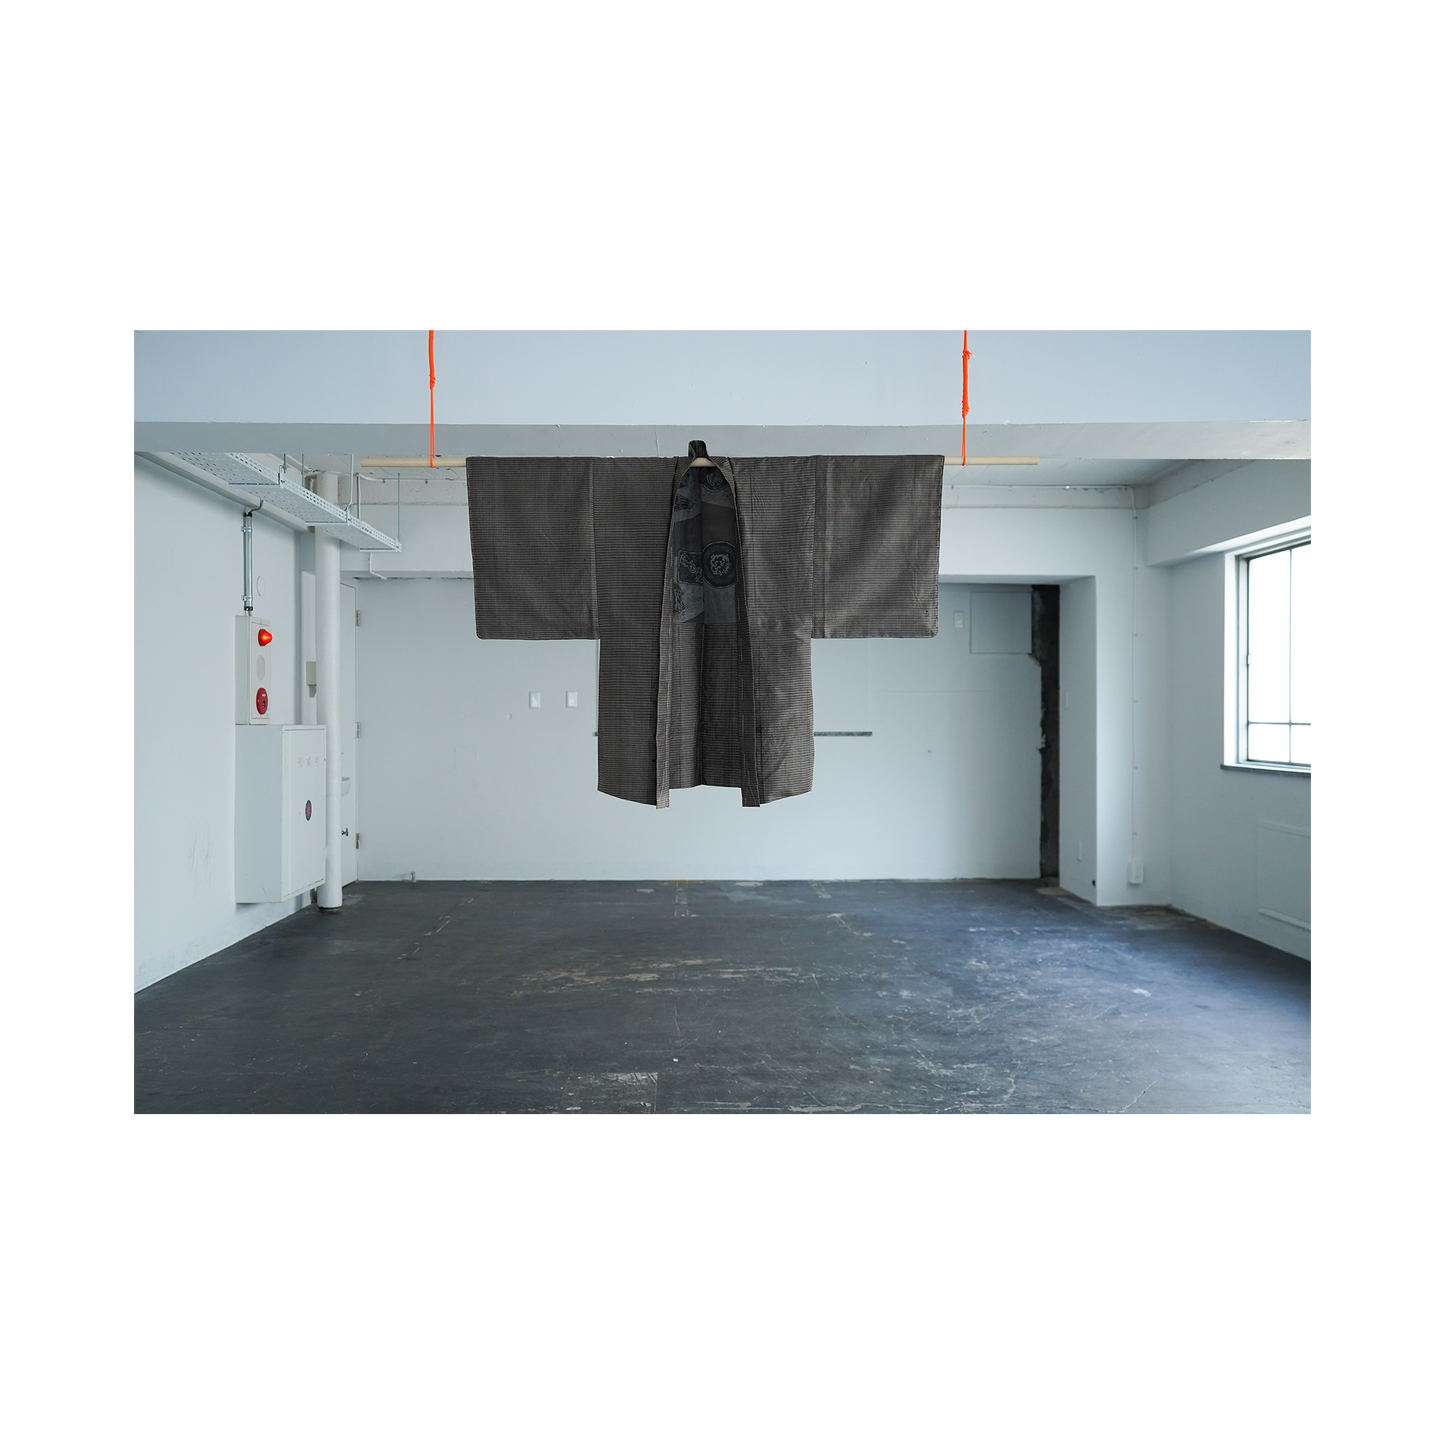 Kimono Working Shirts - Brown 03 M